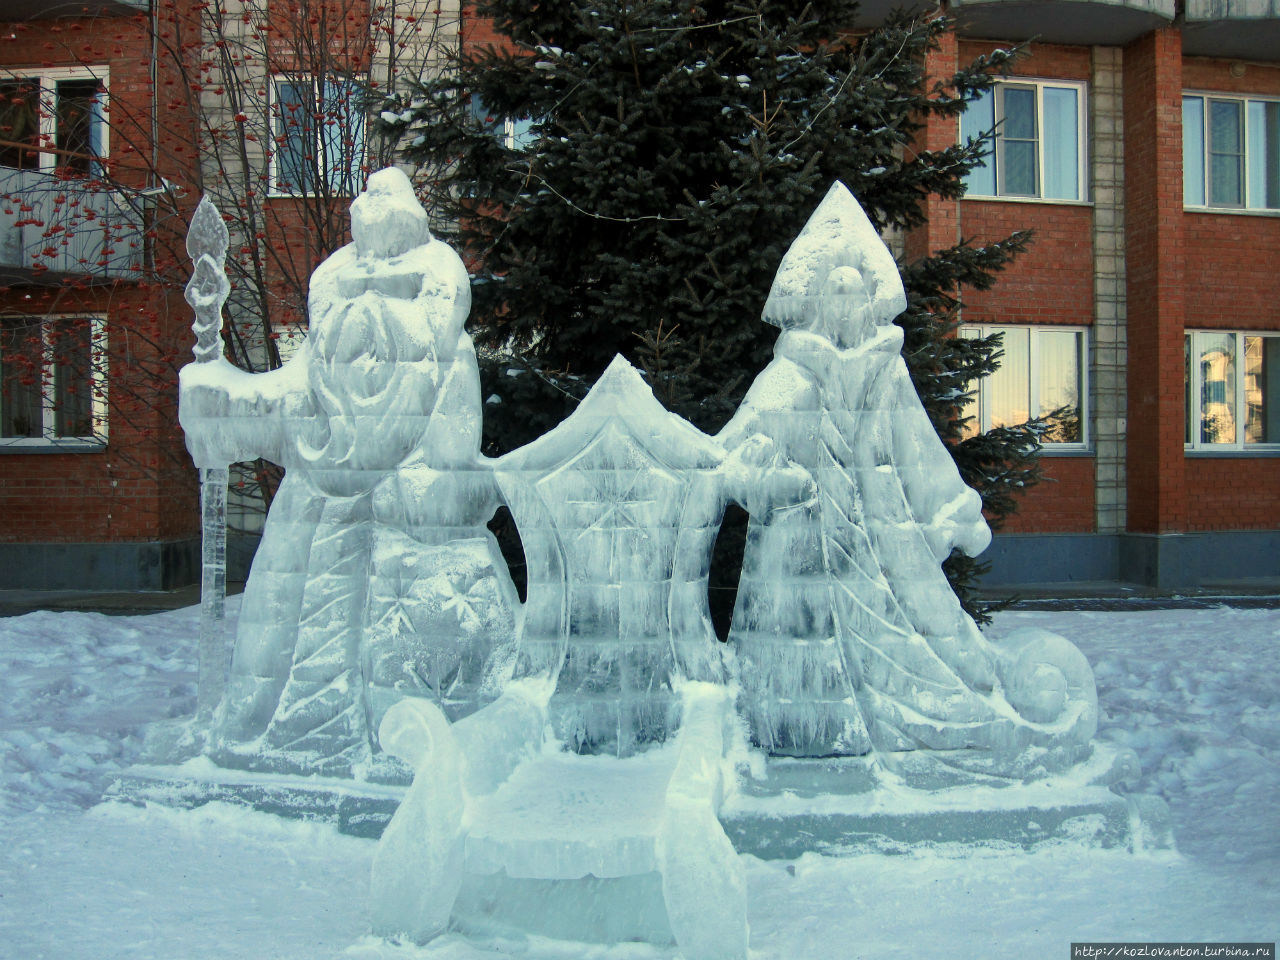 Присаживайтесь отдыхать в компании Деда Мороза и Снегурочки перед входом в санаторий Родник Алтая (он же  Шахтер Кузбасса). Белокуриха, Россия